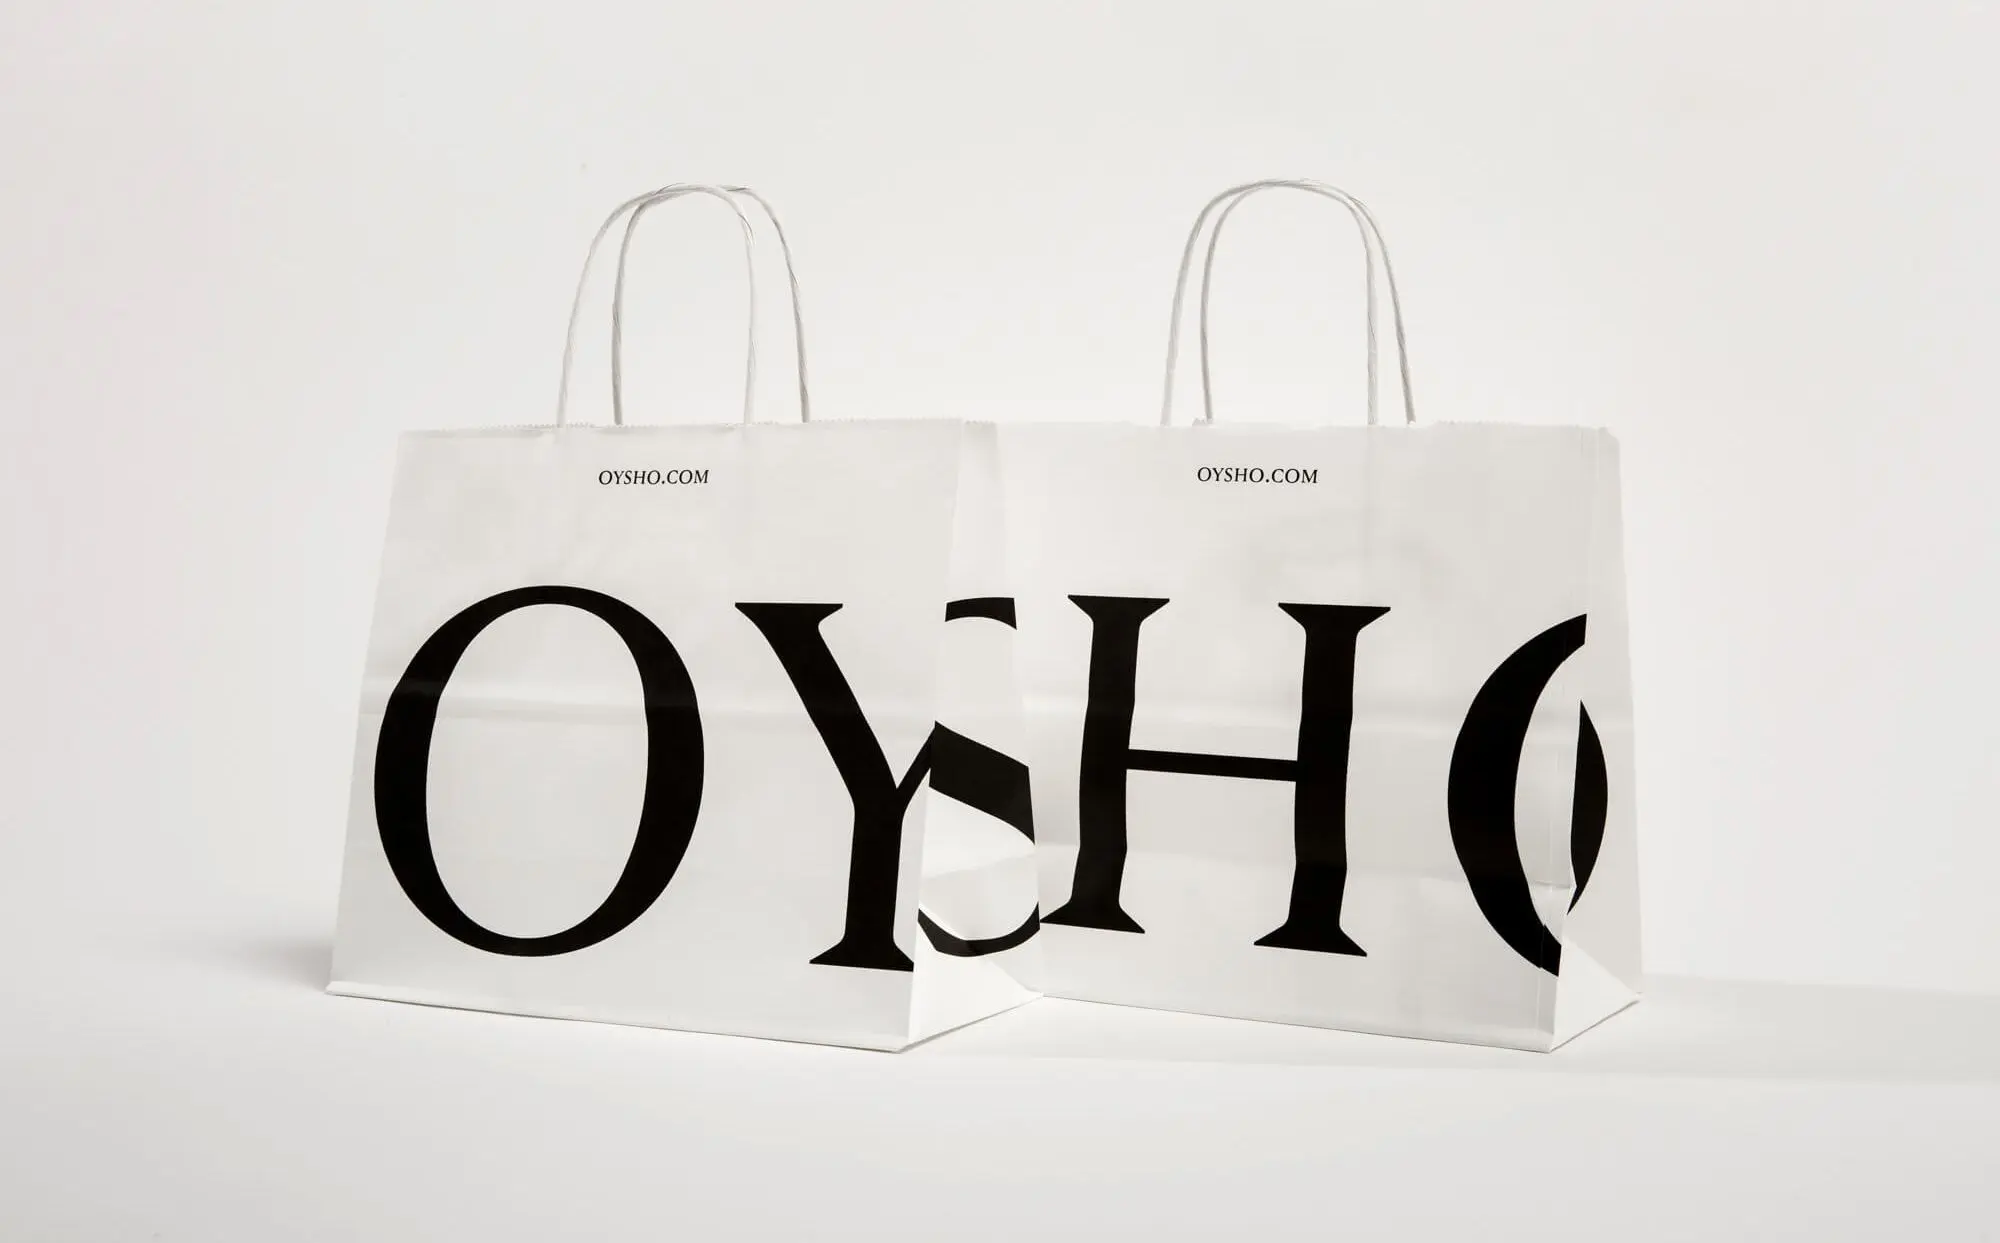 OYSHO - OYSHO added a new photo.